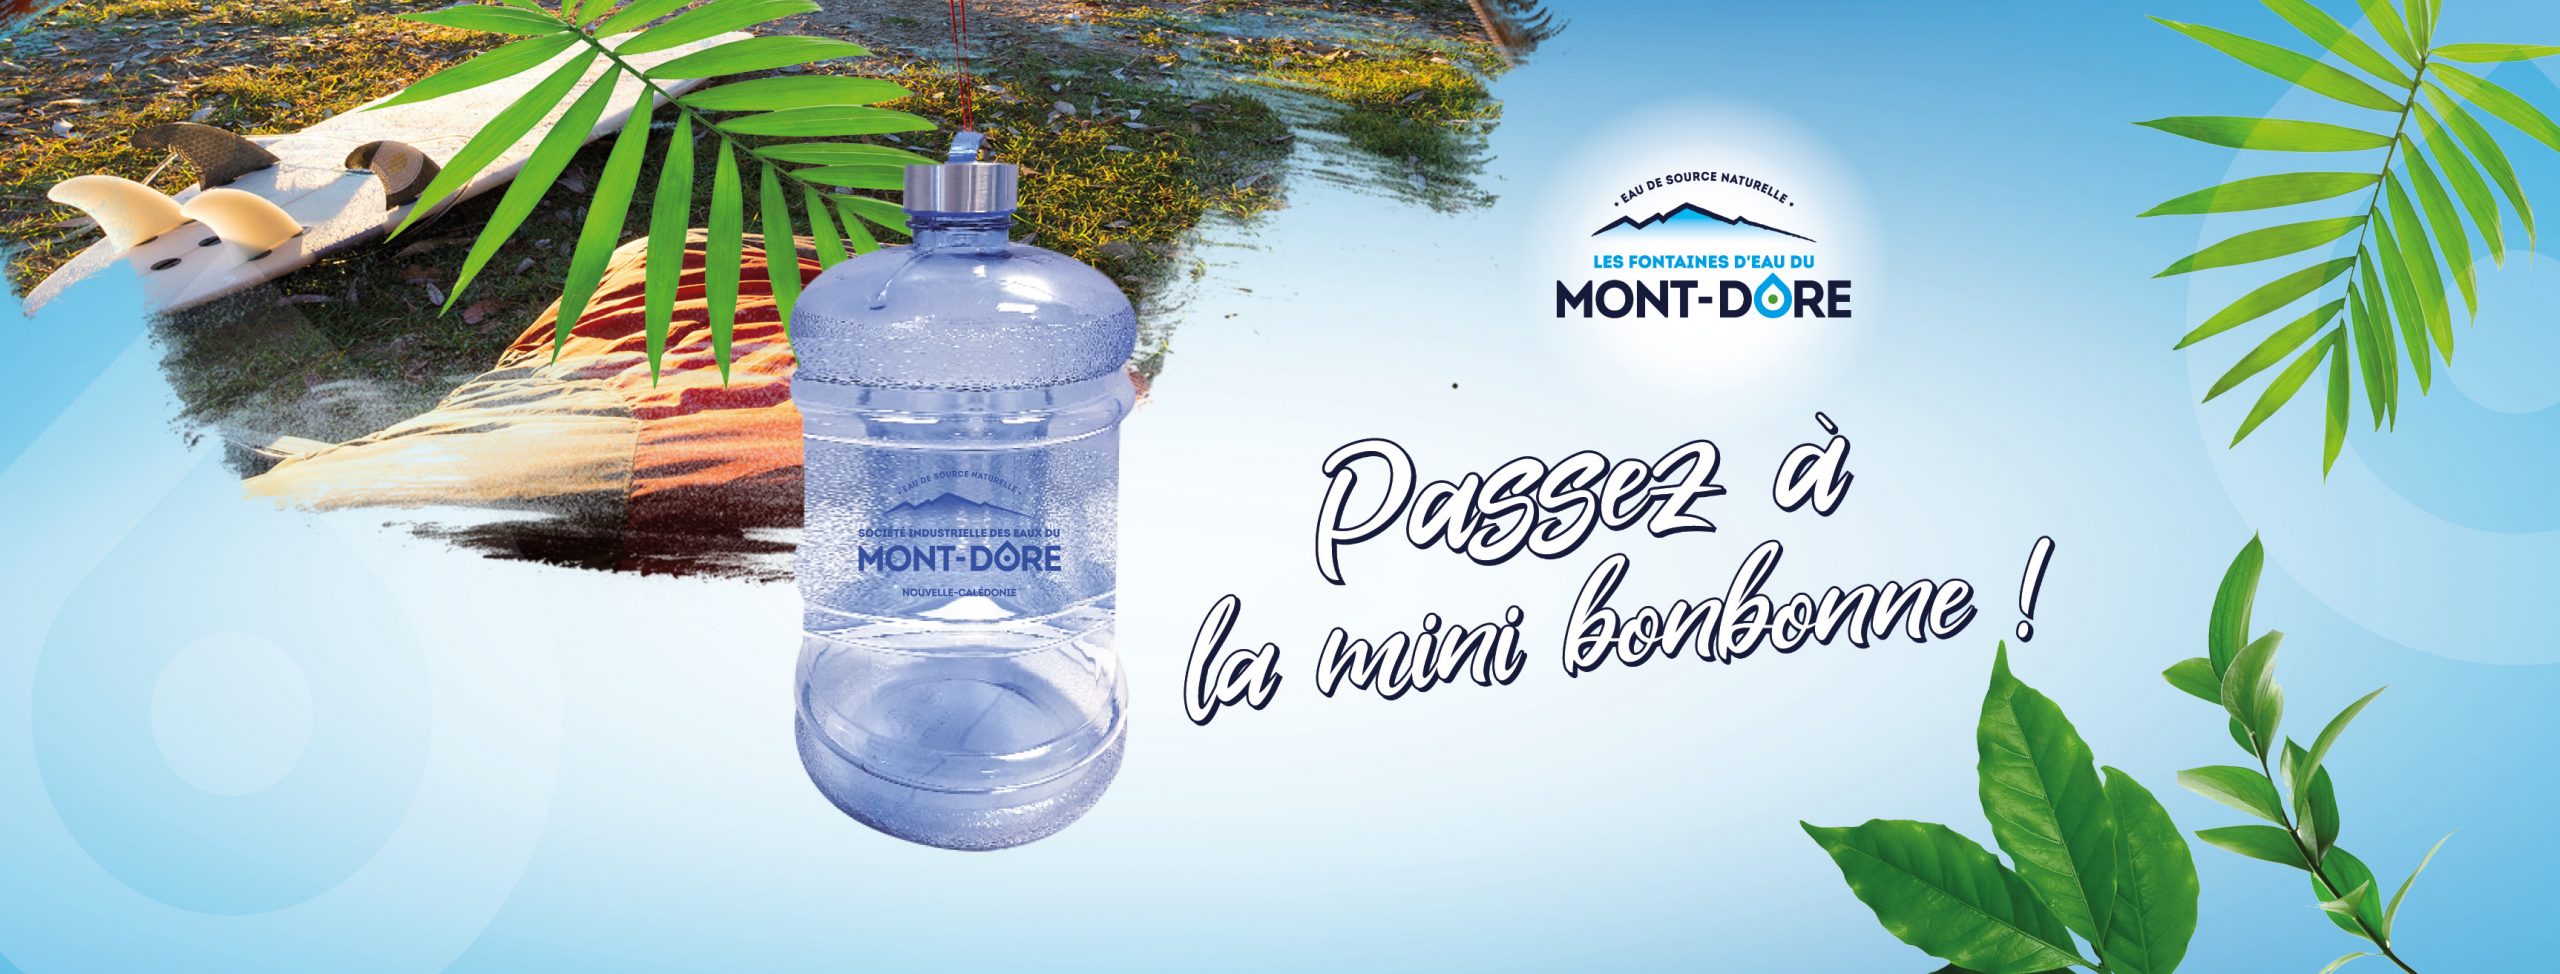 ACCUEIL - Fontaines d'eau du Mont-Dore